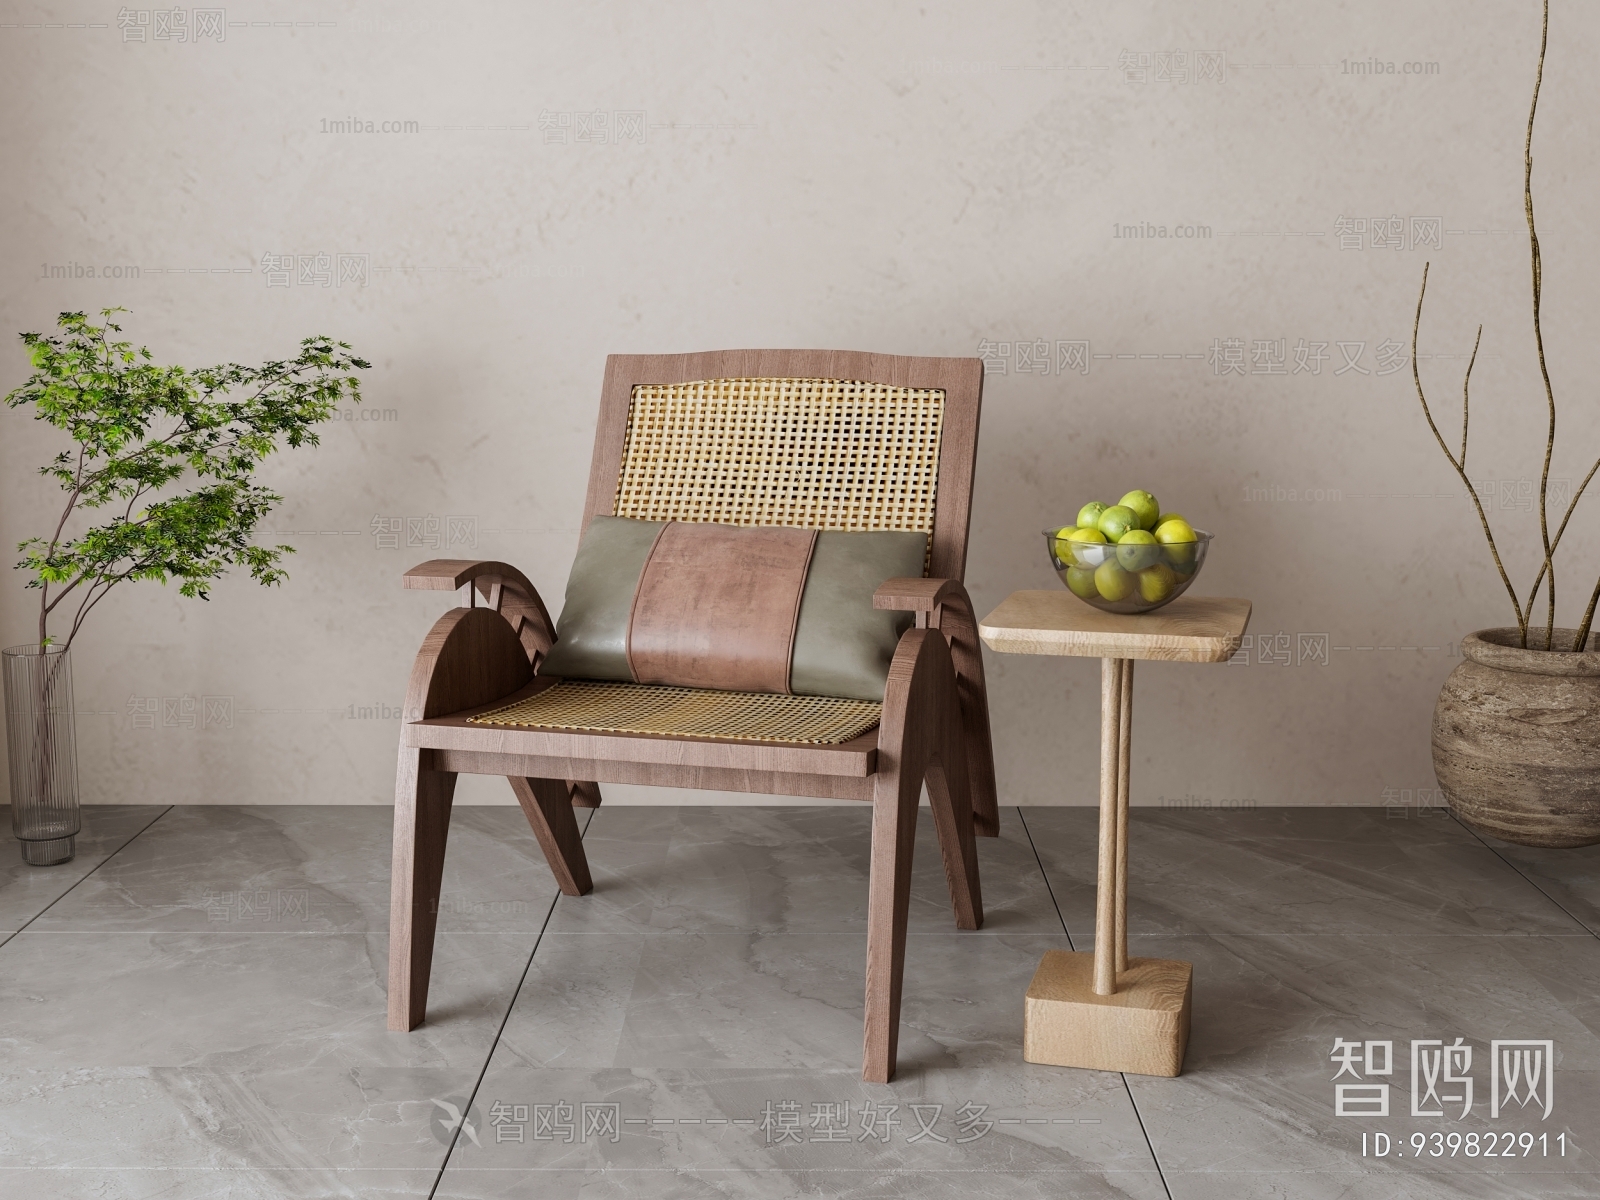 Wabi-sabi Style Lounge Chair